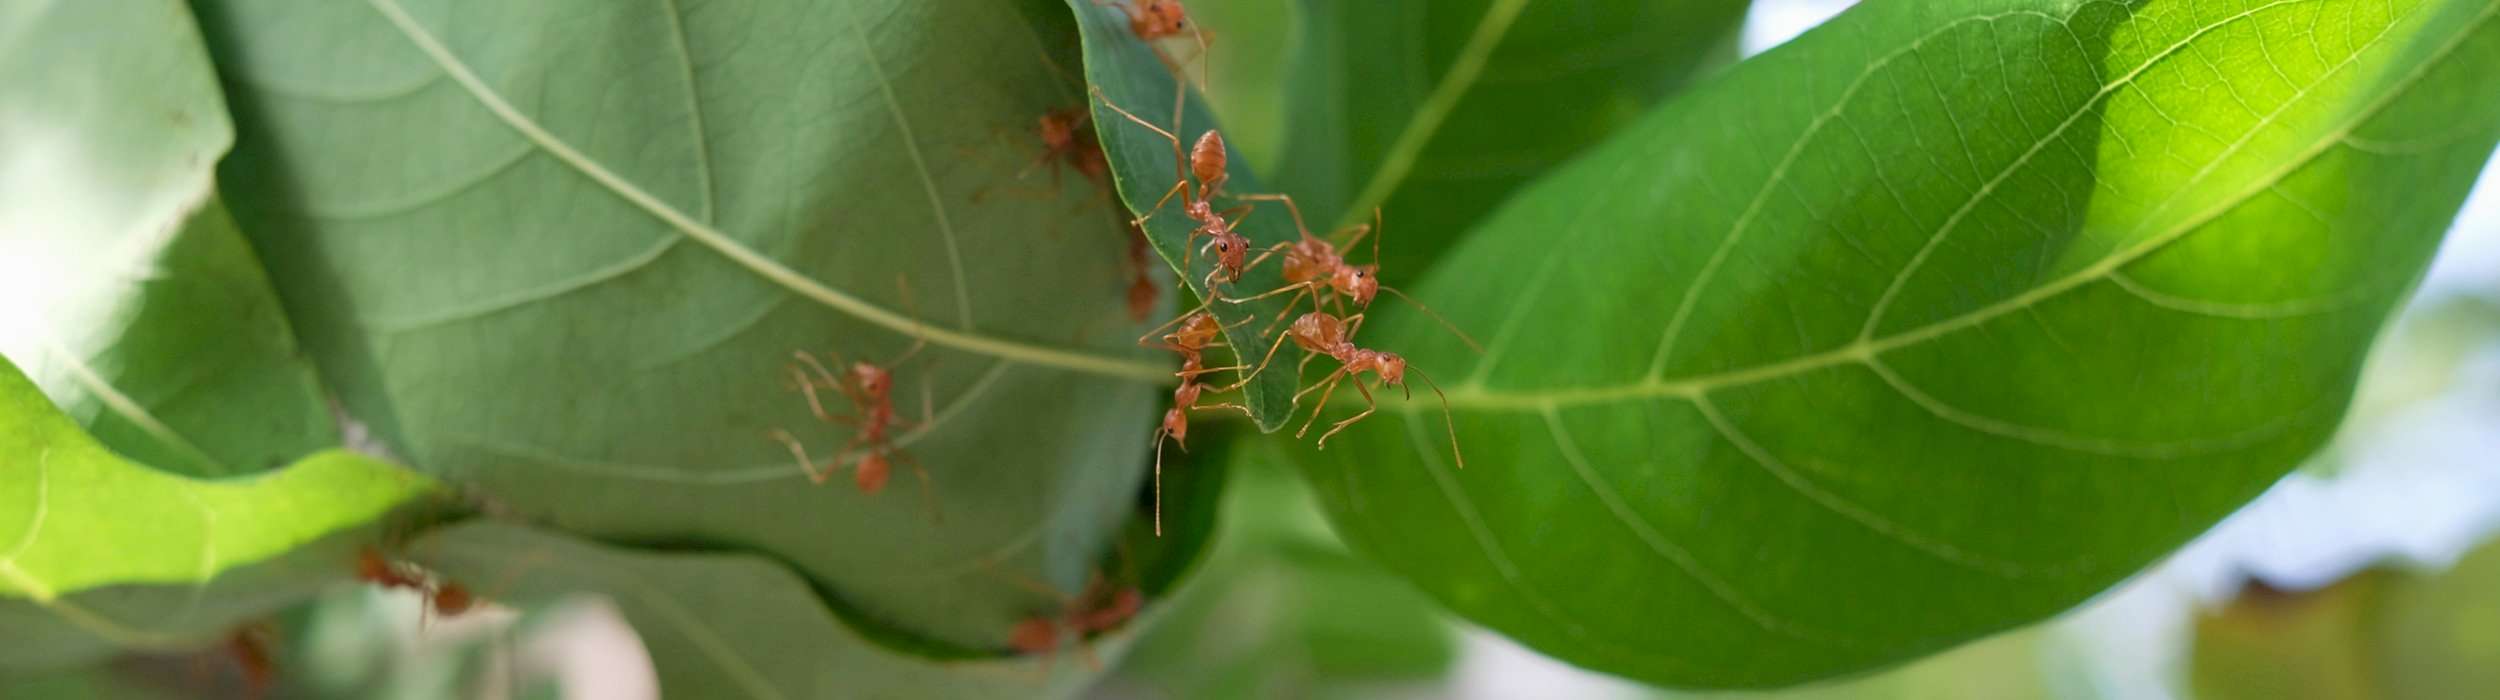 Ameisen auf einer Pflanze